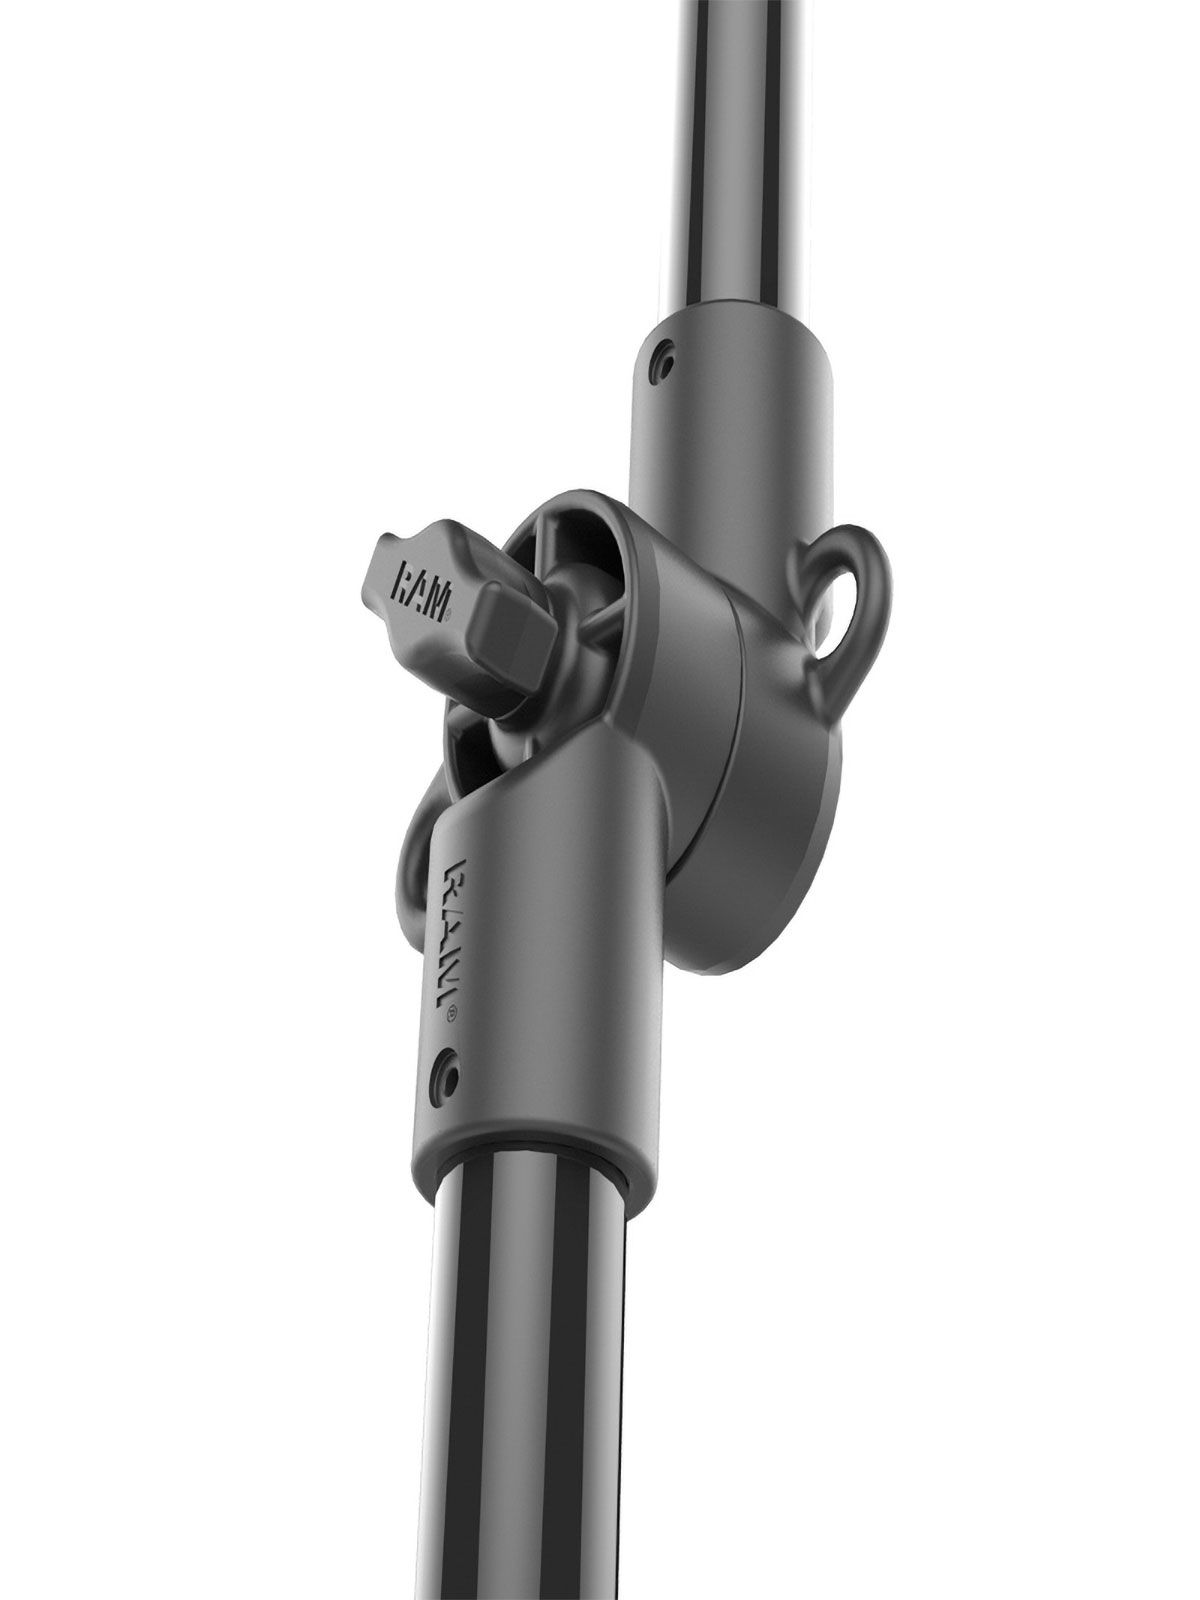 RAM Mounts Tough-Pole GoPro Kamerahalterung für Tough-Track Schienen - B-Kugel (1 Zoll), Gesamtlänge ca. 950 mm, Track-Node-Basis